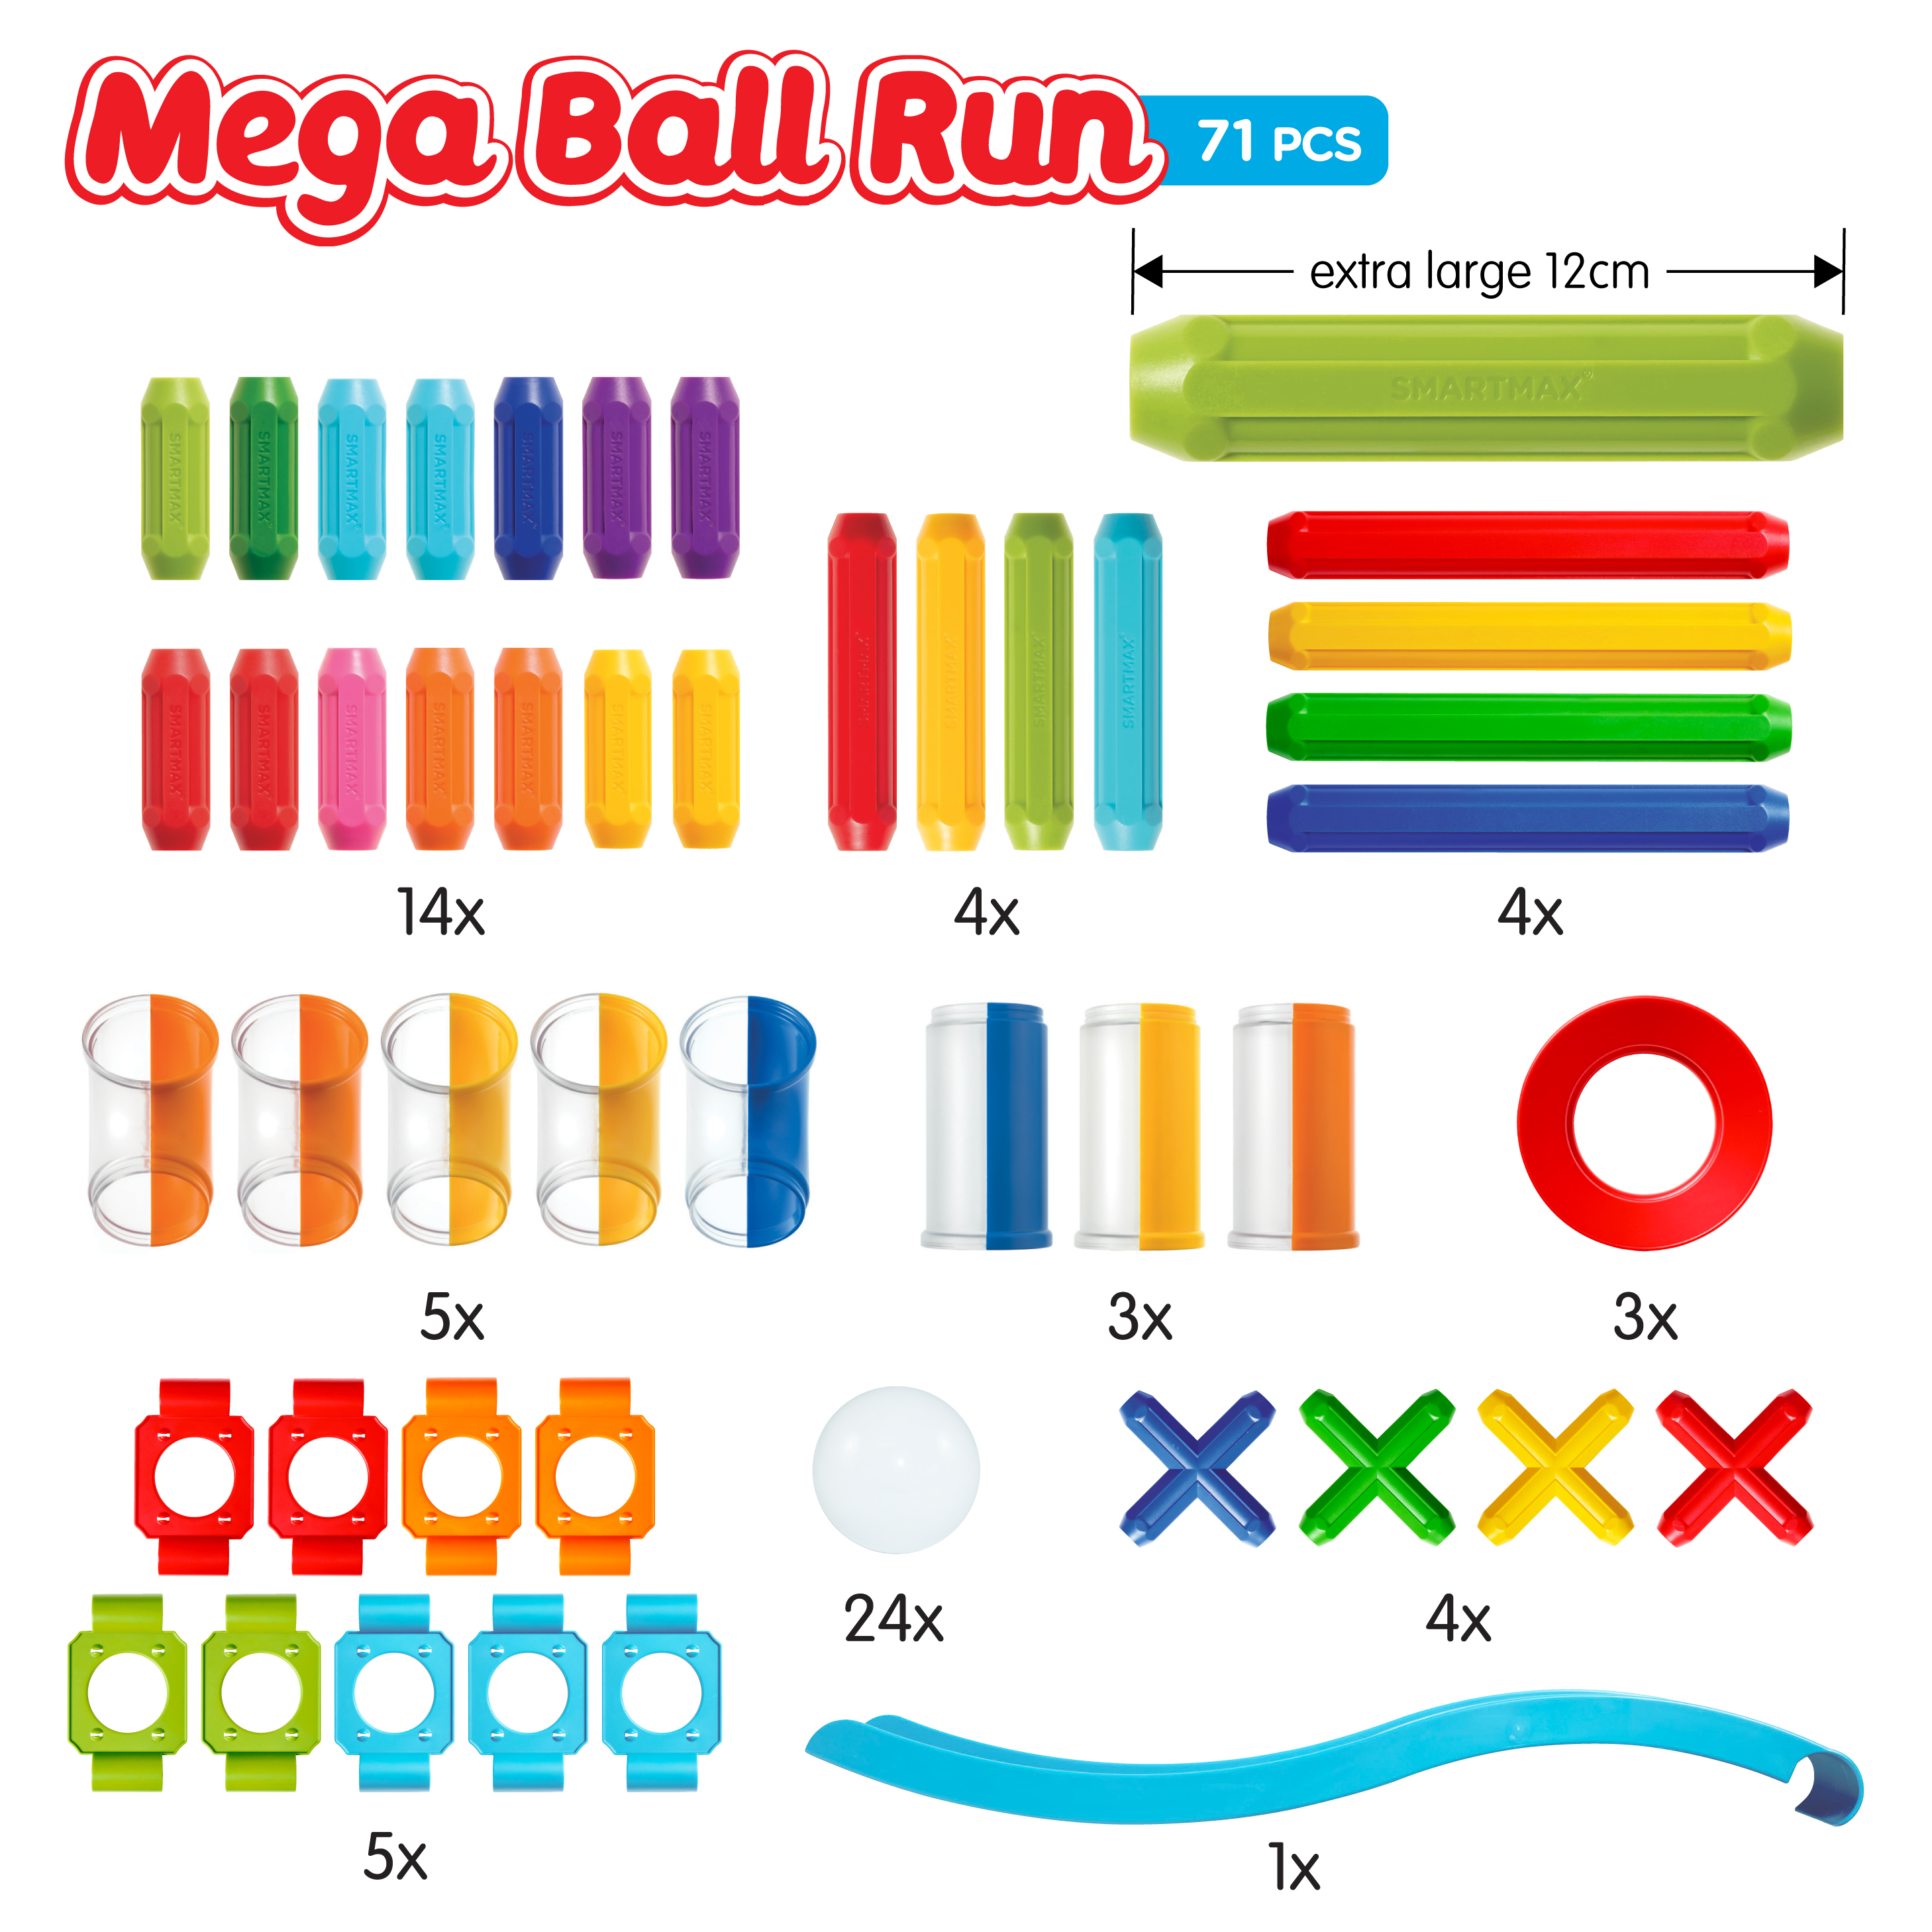 Mega Ball Run